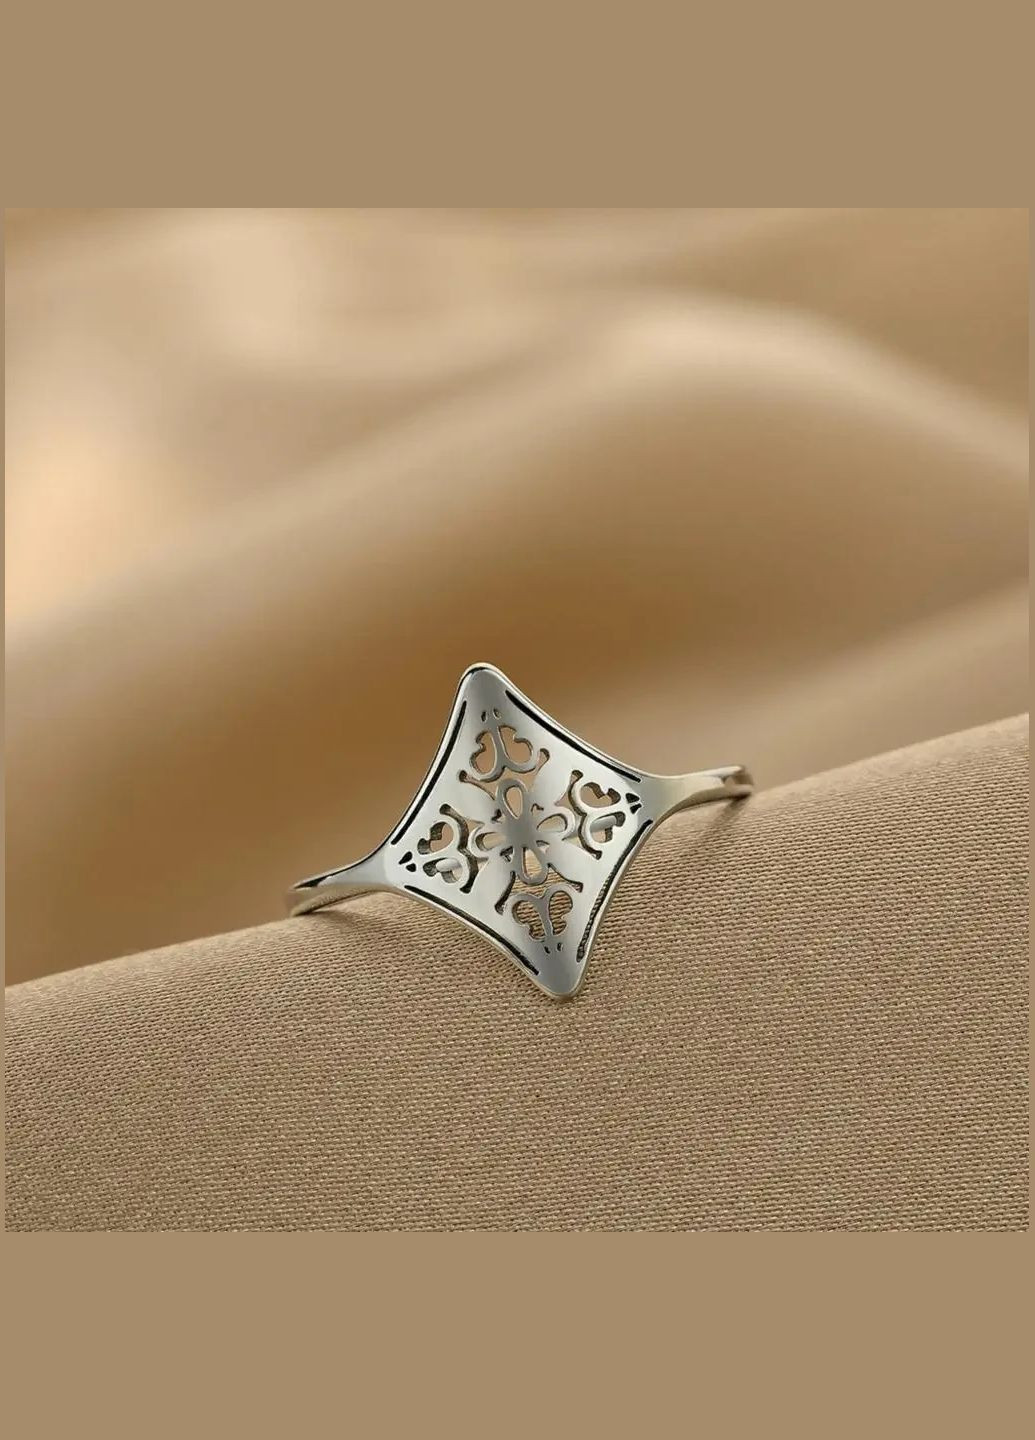 Минималистическое серебристое женское кольцо лазером вырезаны узоры размер 17.5 Fashion Jewelry (285272343)